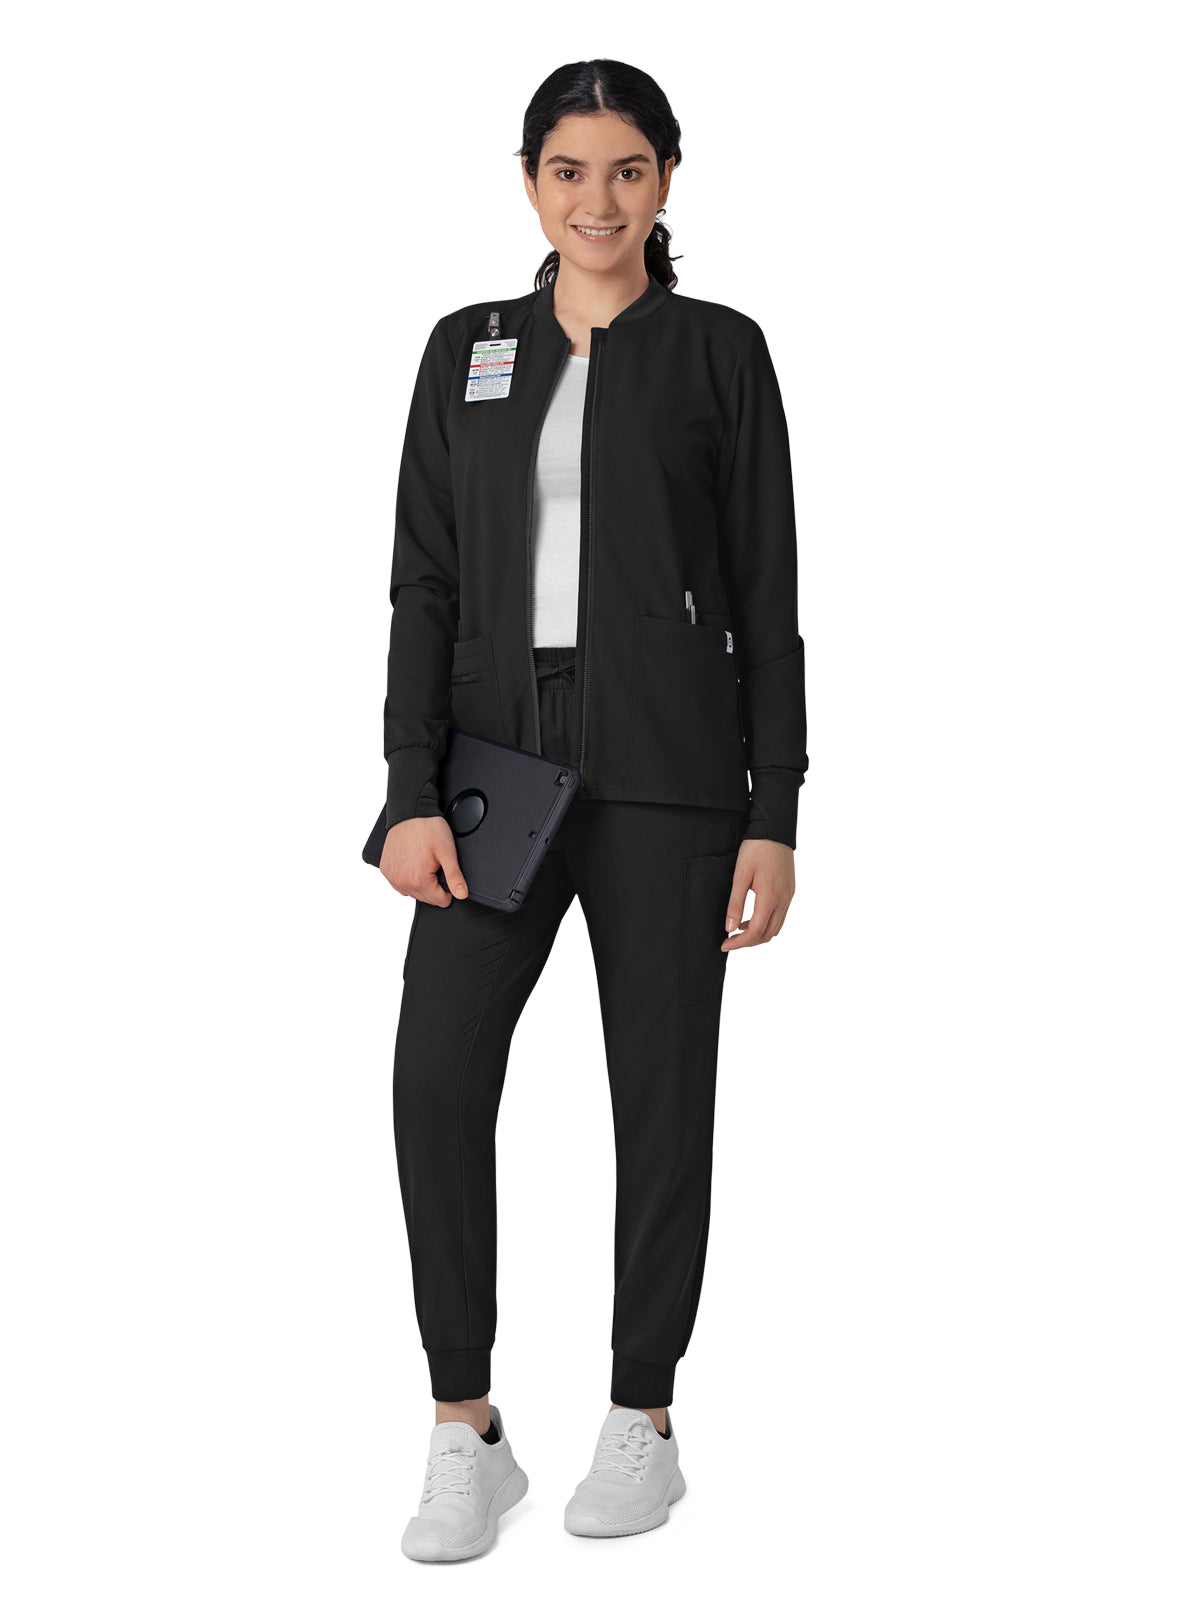 Women's Zip-Front Jacket - 8122 - Black